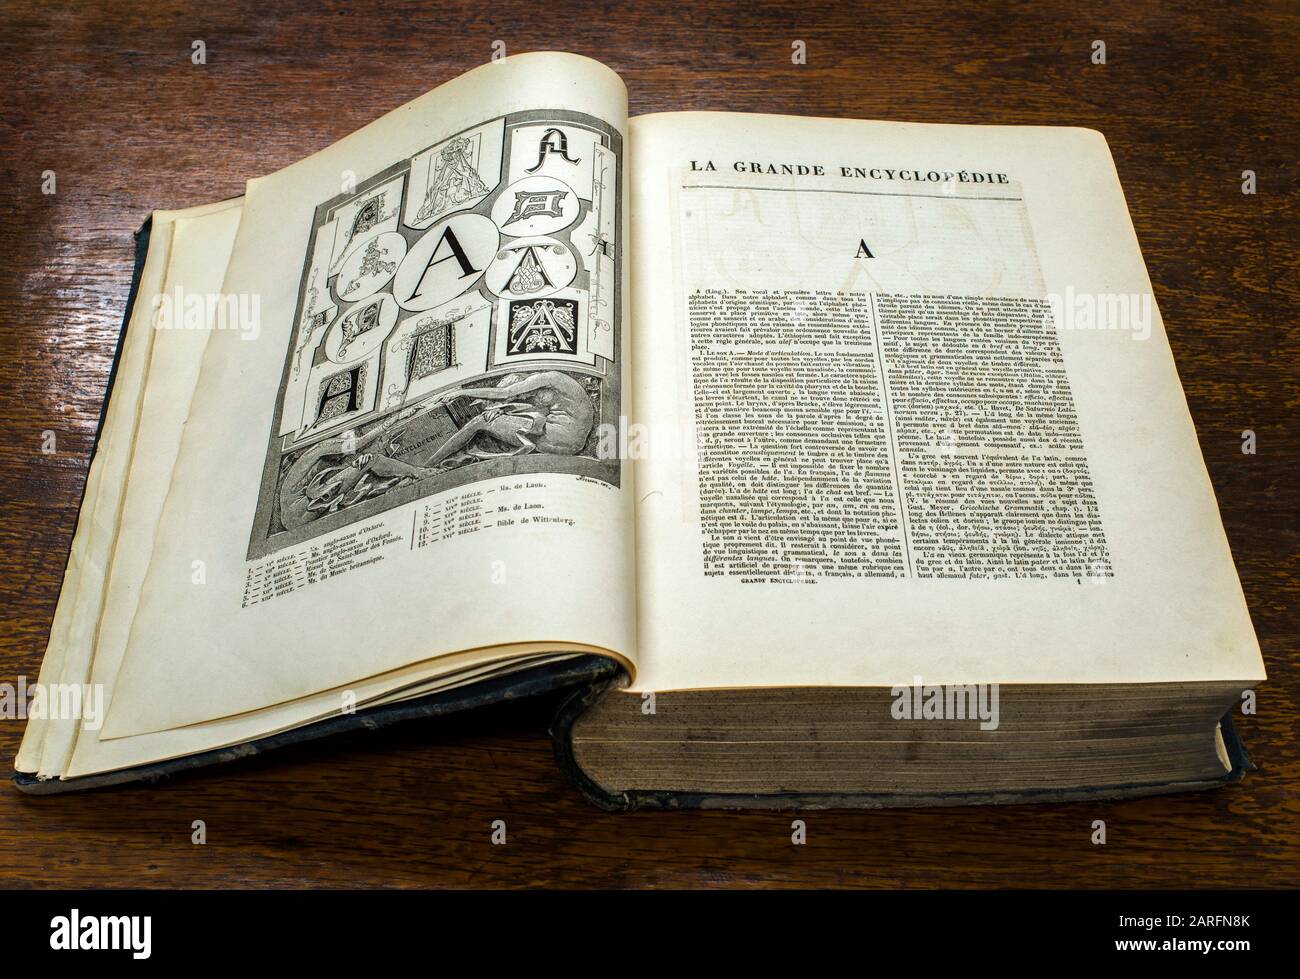 Abrir libro viejo y grande. Enciclopedia en francés. Foto de stock